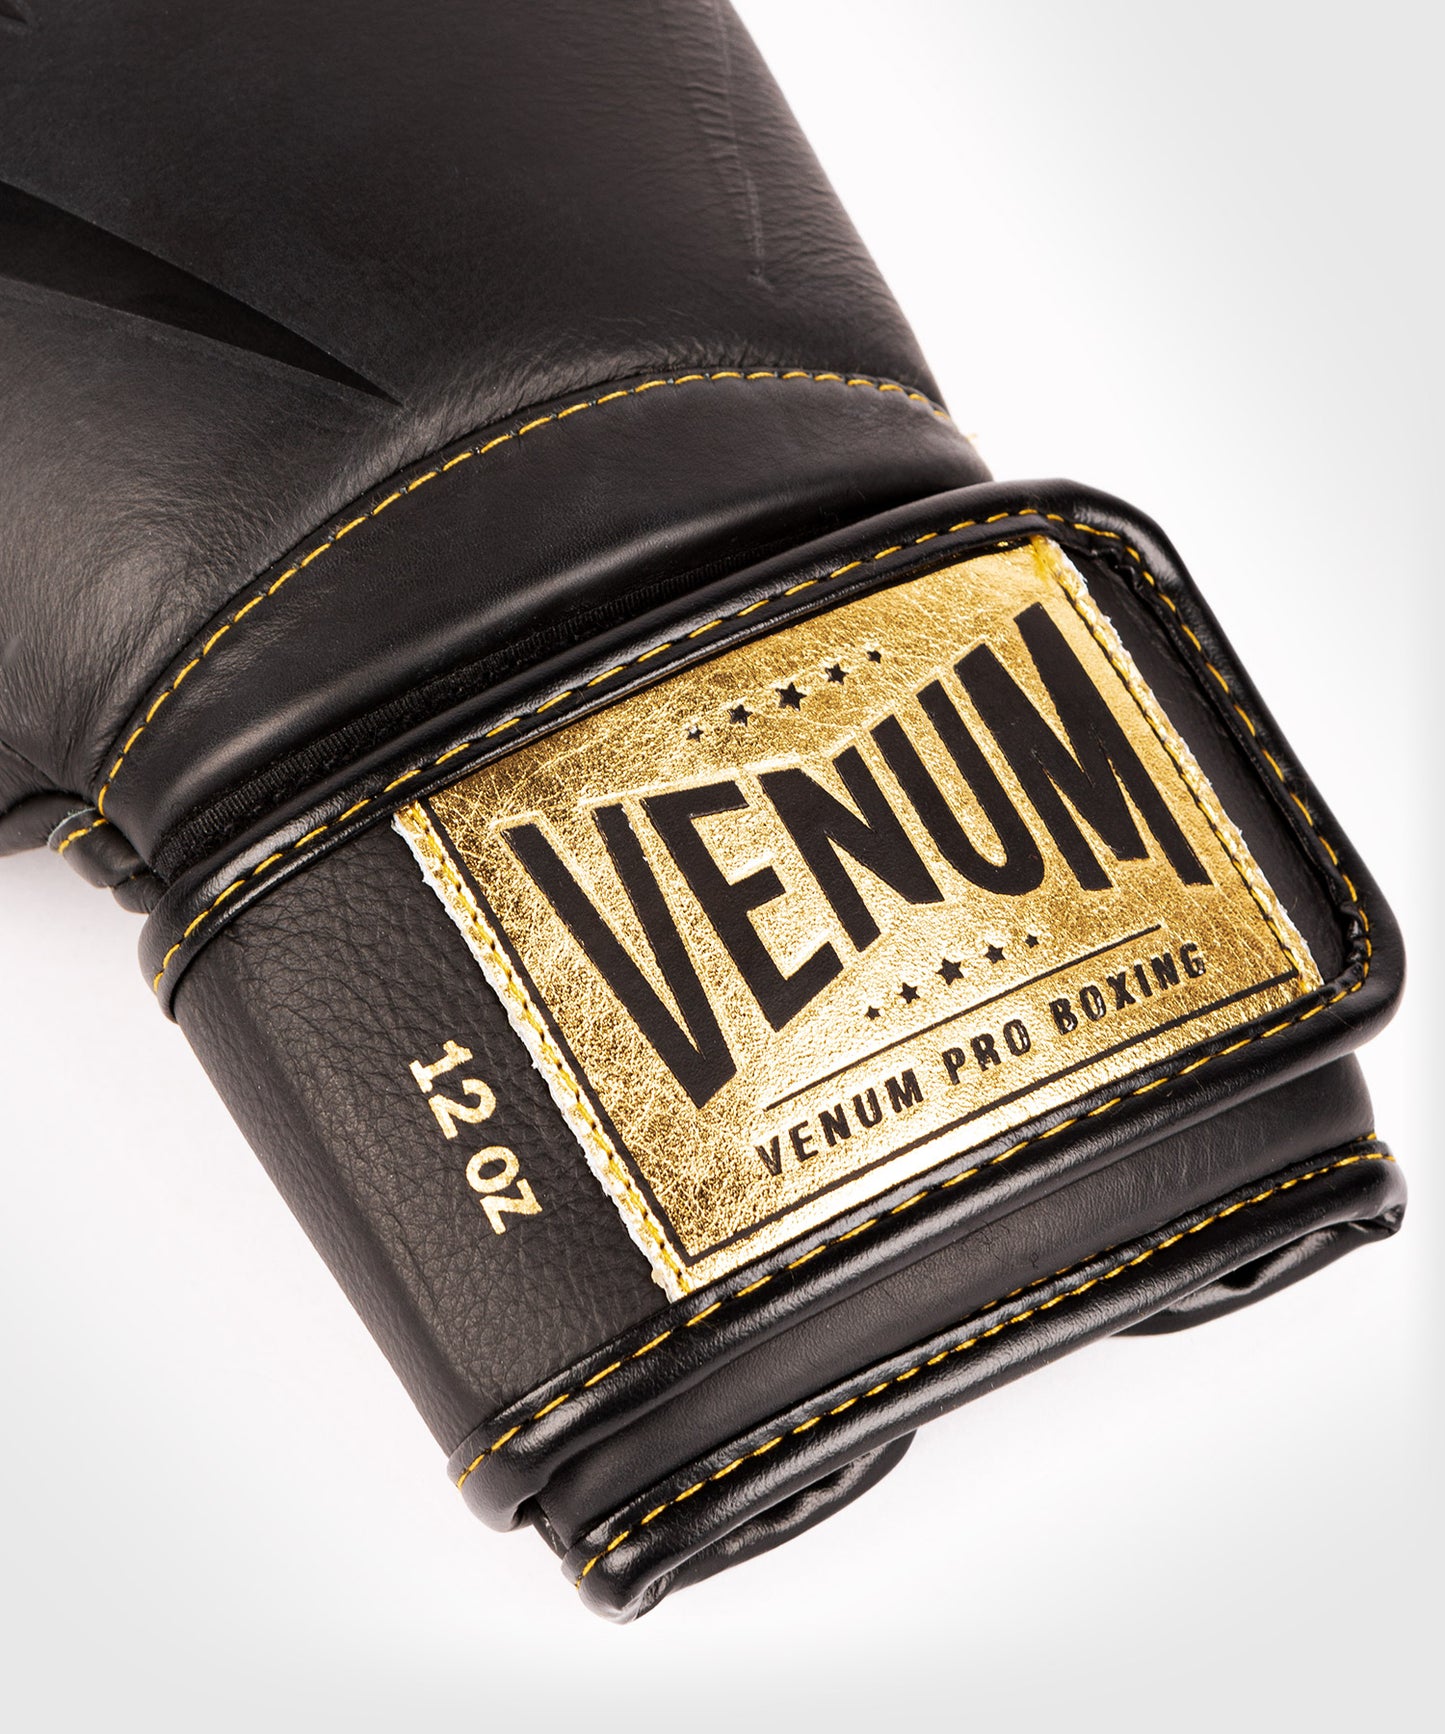 Venum Giant 2.0 Pro Боксерские перчатки на липучке - черный/черно-золотой